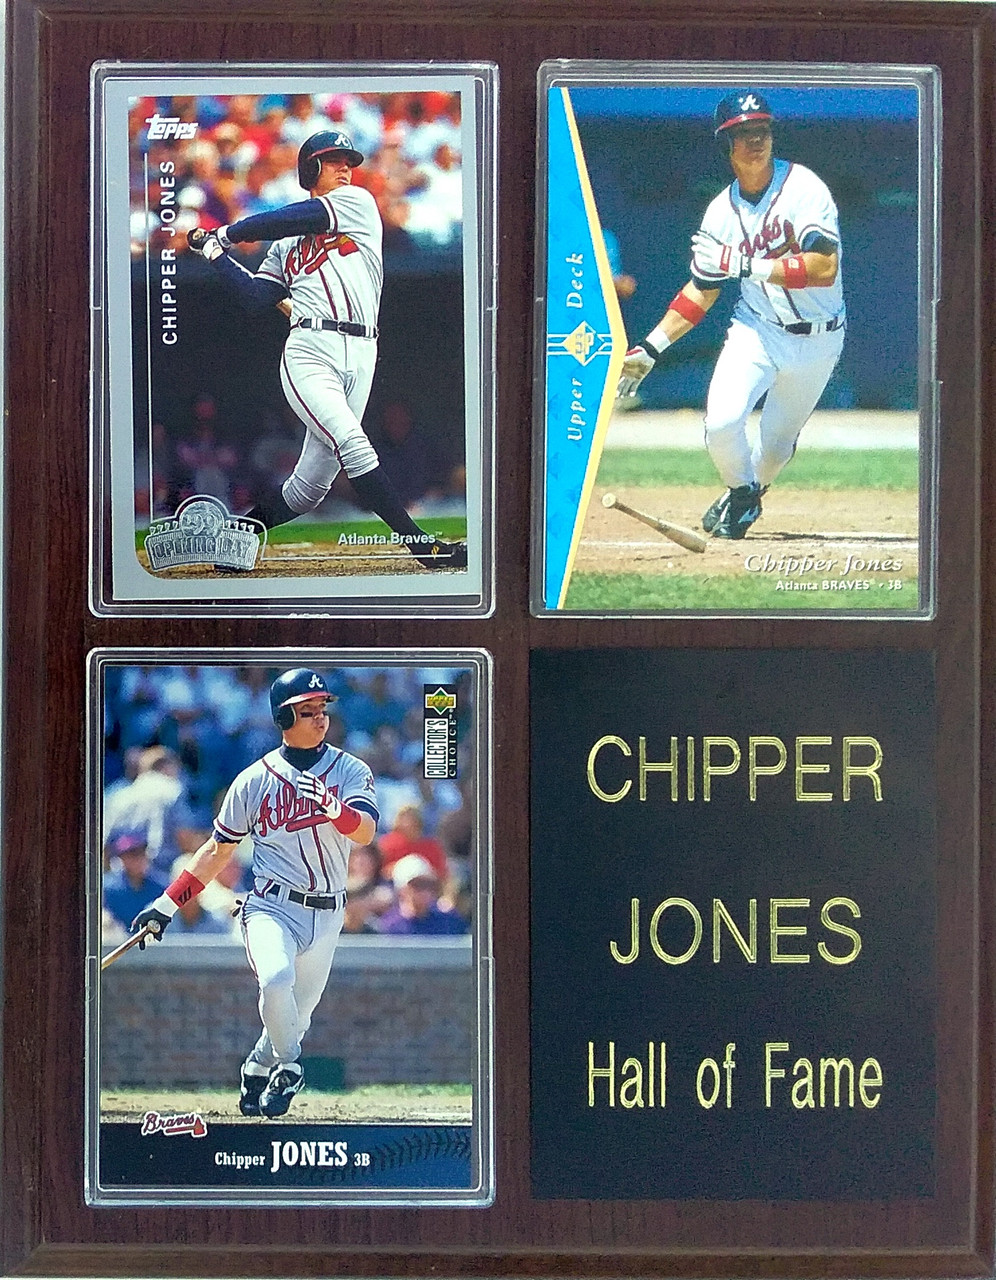 Chipper Jones Q&A: 'Ballplayer' talks about new book, Hall of Fame